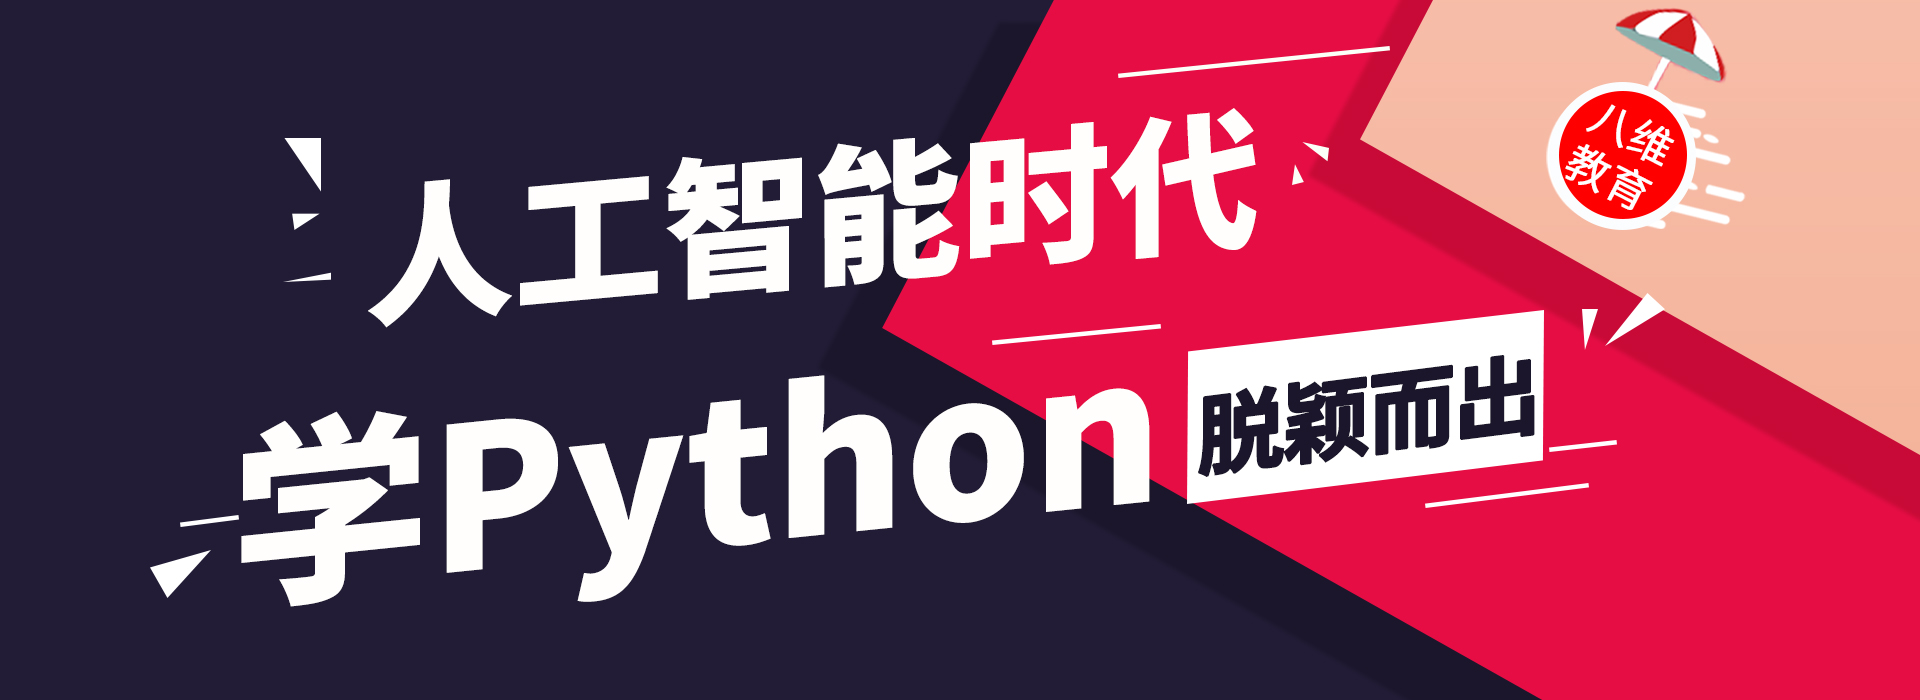 成为Python人工智能开发者的前途怎么样